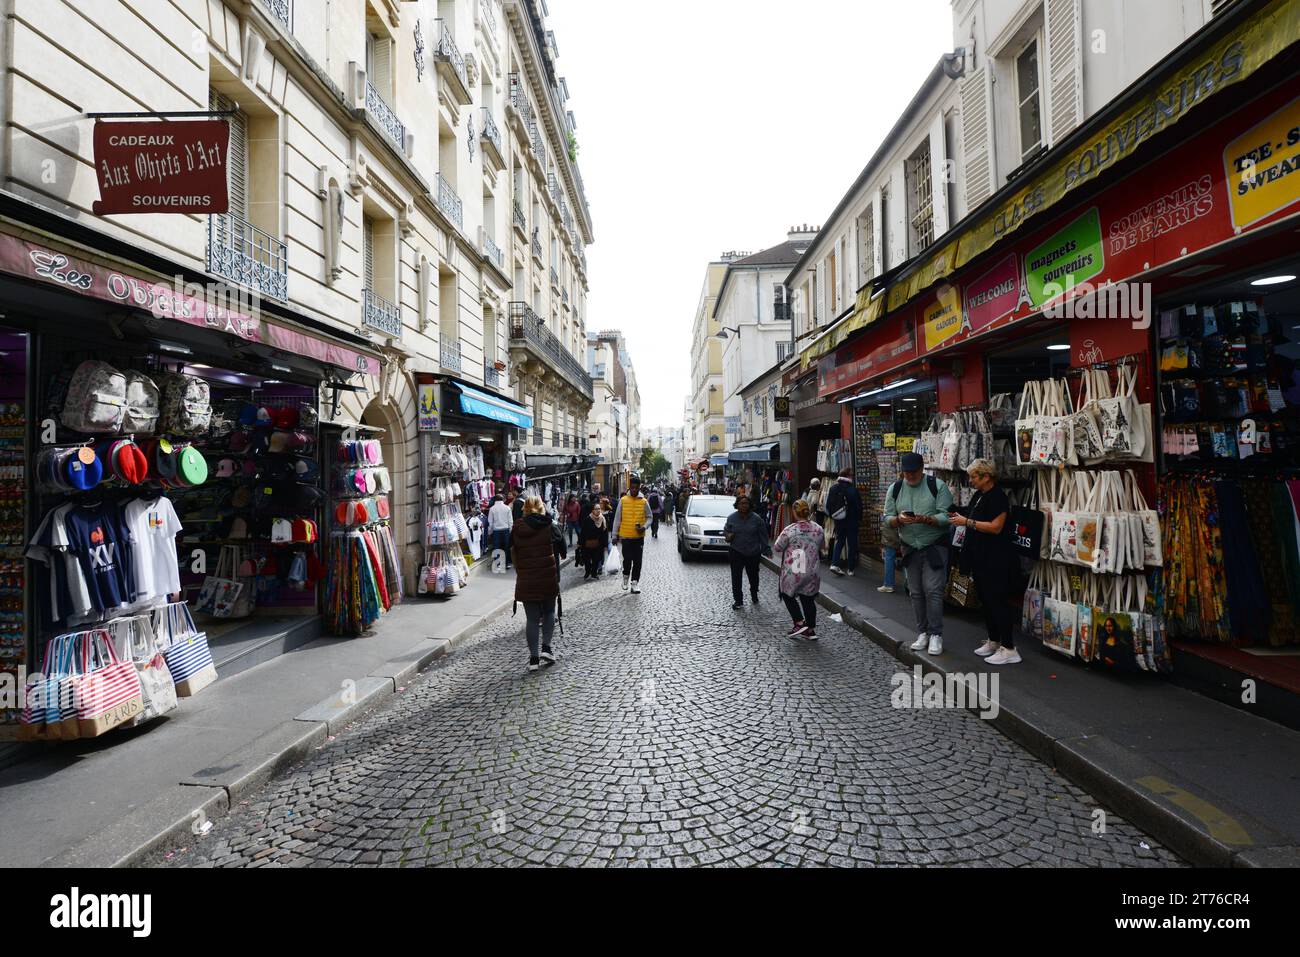 Souvenir shops in Montmartre, Paris, France. Stock Photo